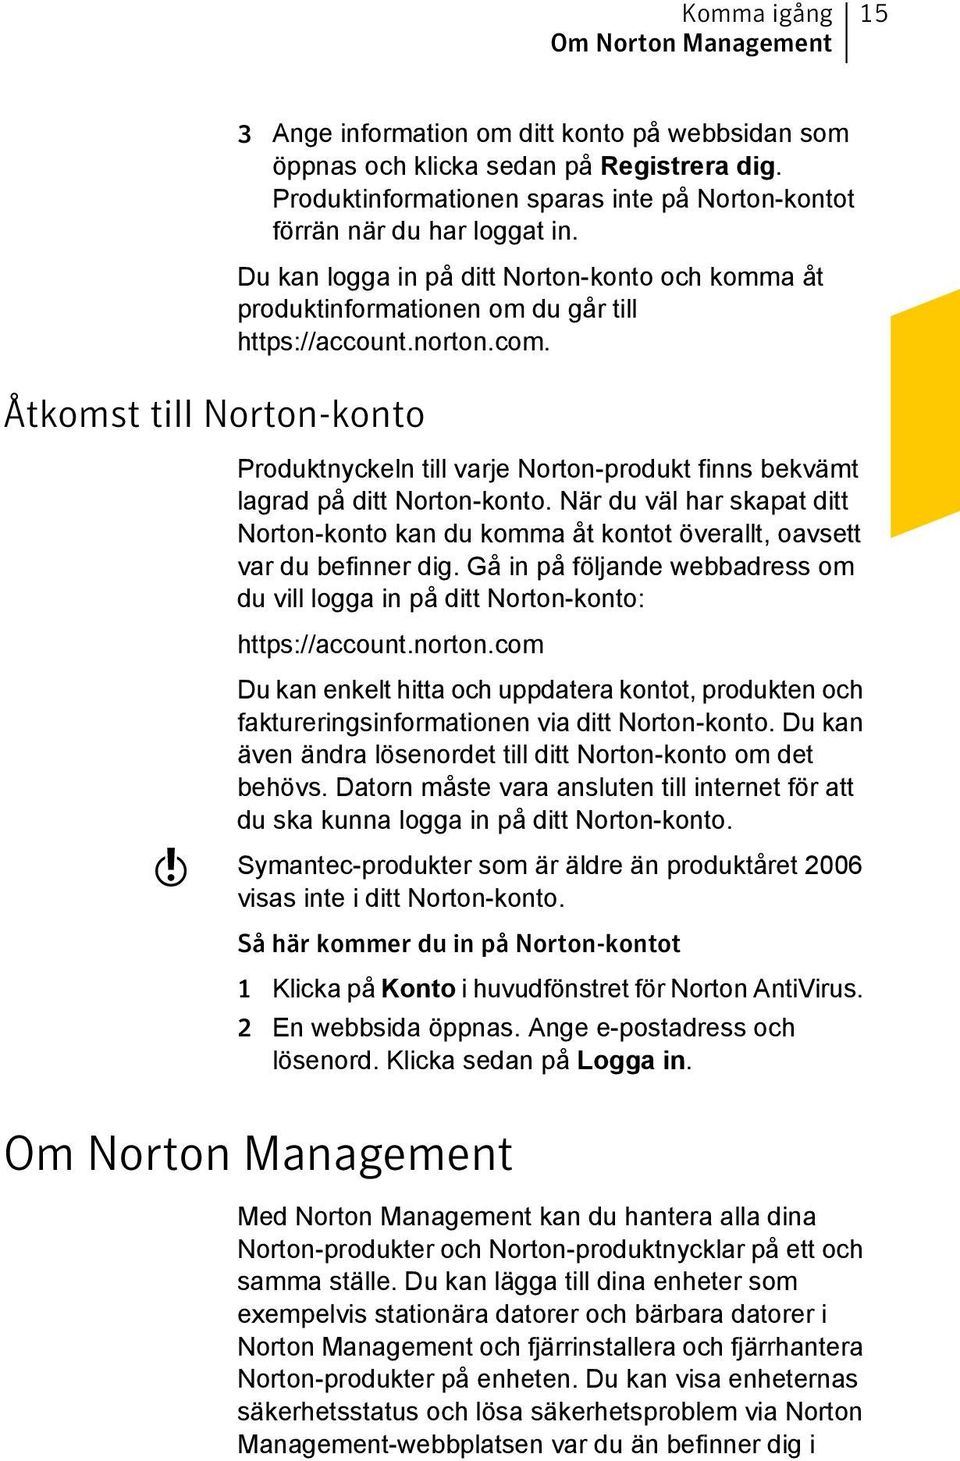 Produktnyckeln till varje Norton-produkt finns bekvämt lagrad på ditt Norton-konto. När du väl har skapat ditt Norton-konto kan du komma åt kontot överallt, oavsett var du befinner dig.